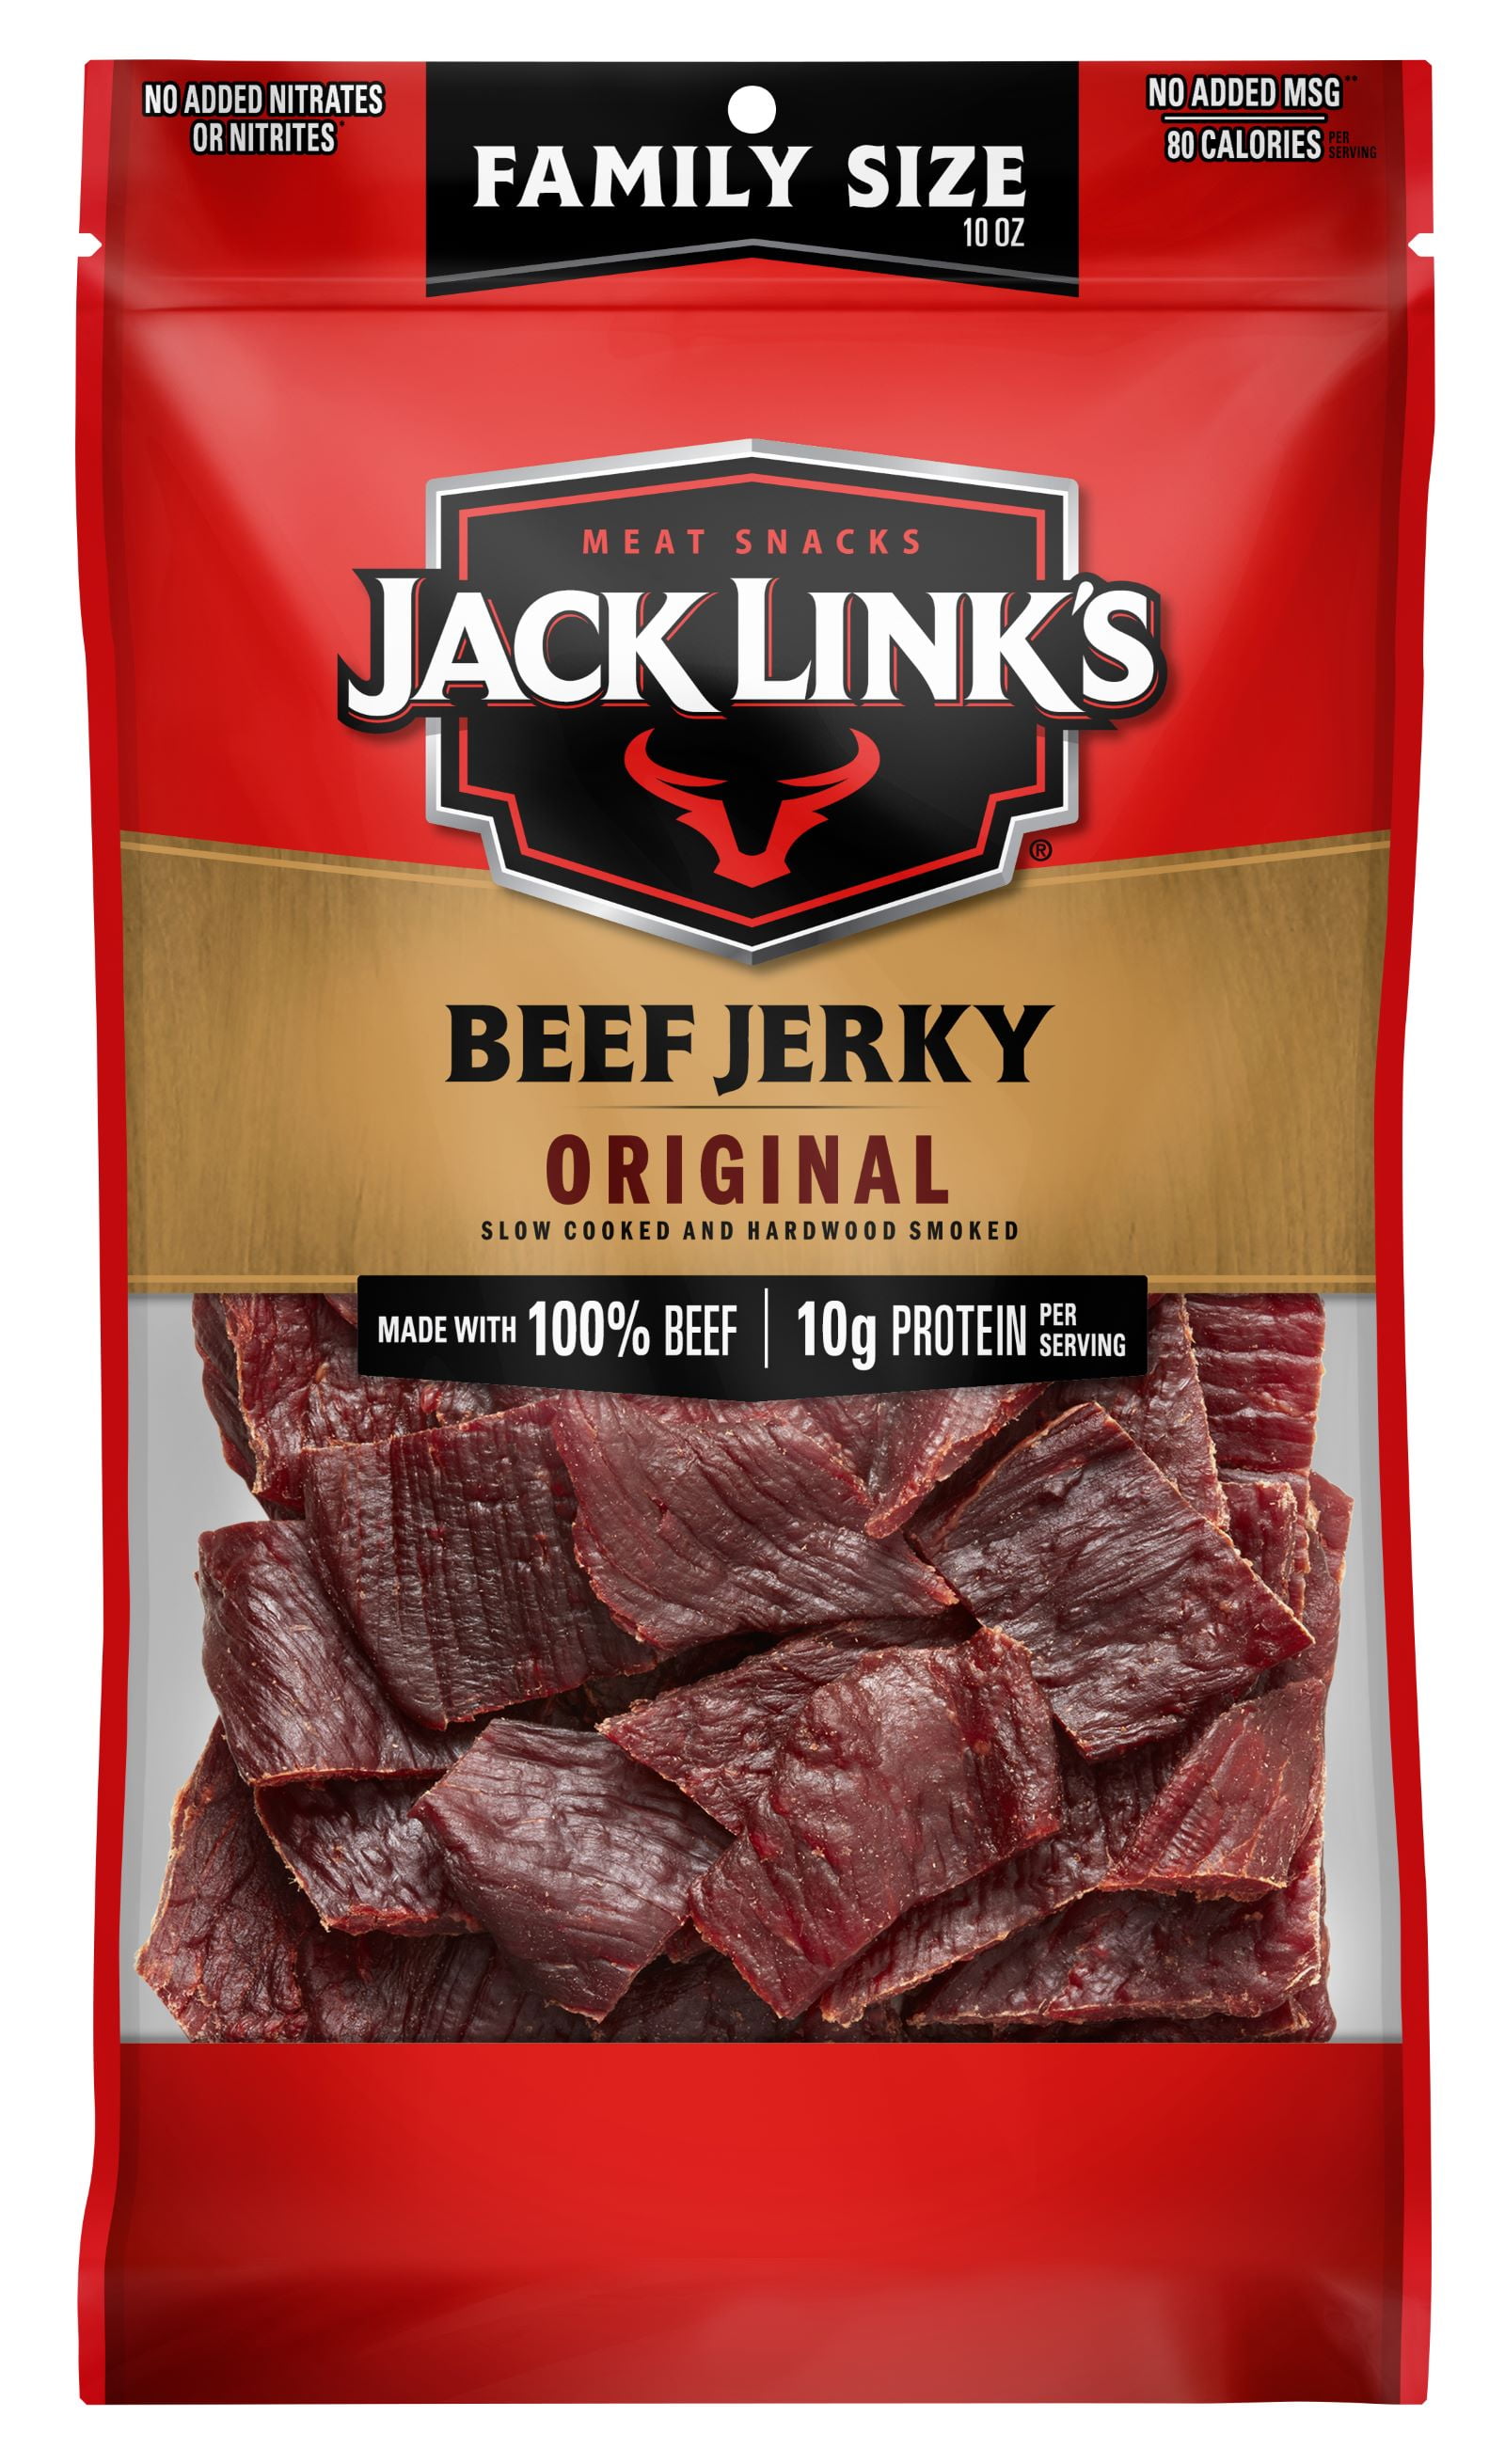 Jack Links Beef Jerky, 100% Beef, Original, 10g of Protein Per Serving, 10 oz bag